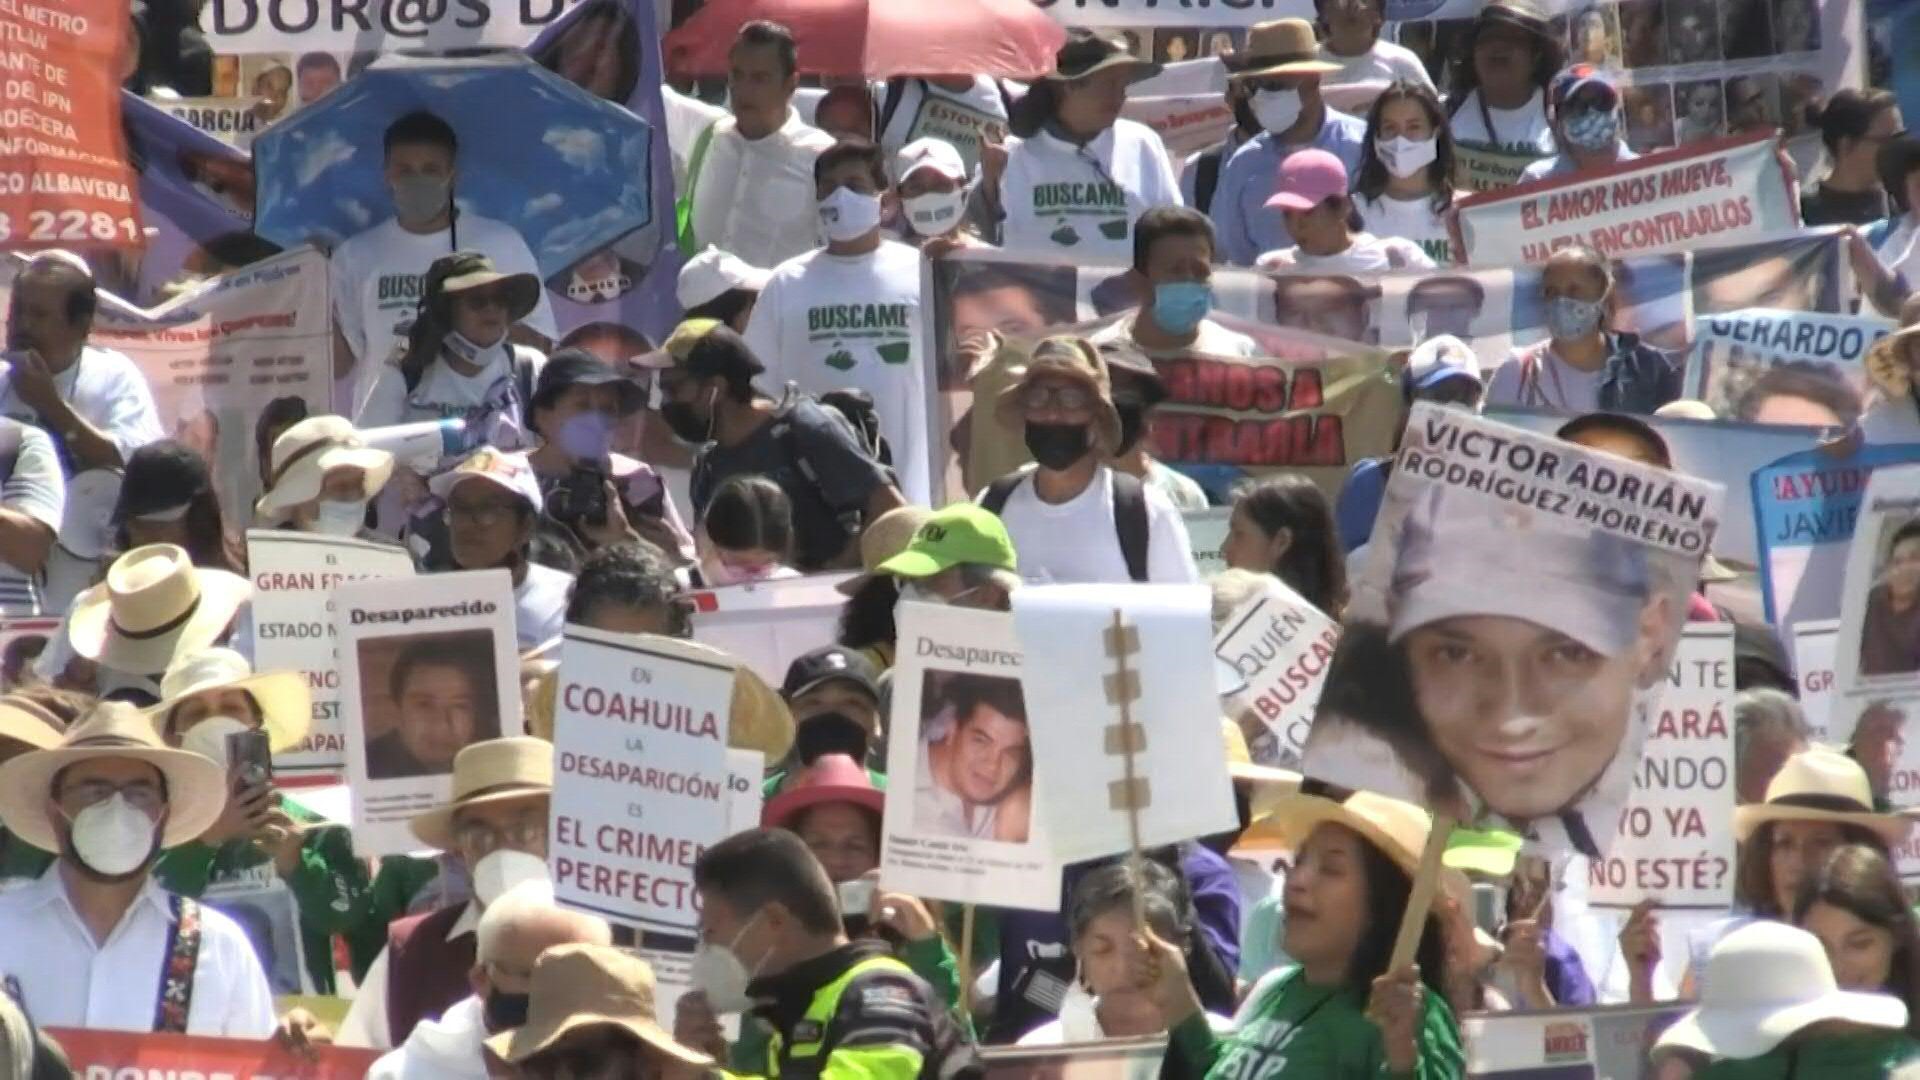 La cifra de 100 mil desaparecidos se dio poco después de las marchas llevadas a cabo en el Día de la Madre. Foto: Paula Villela/AFP